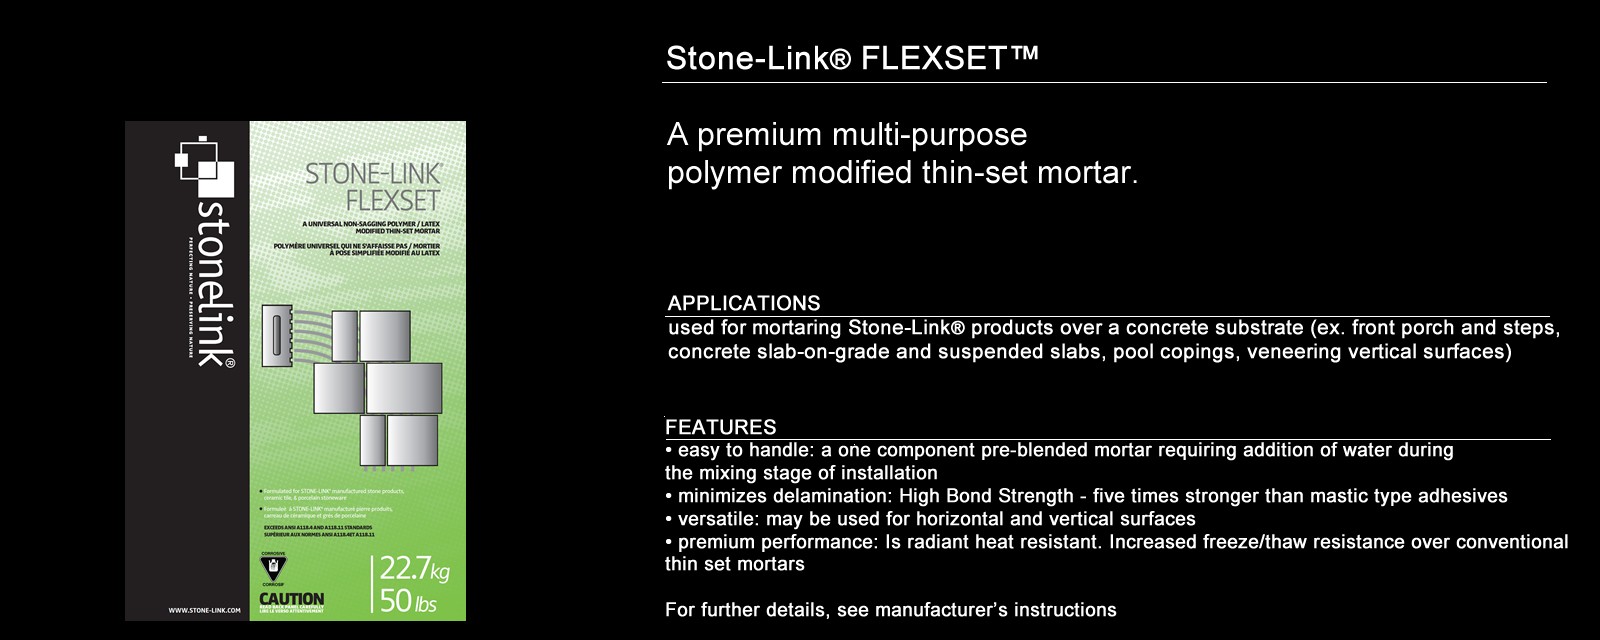 Stone-Link® Flexset™